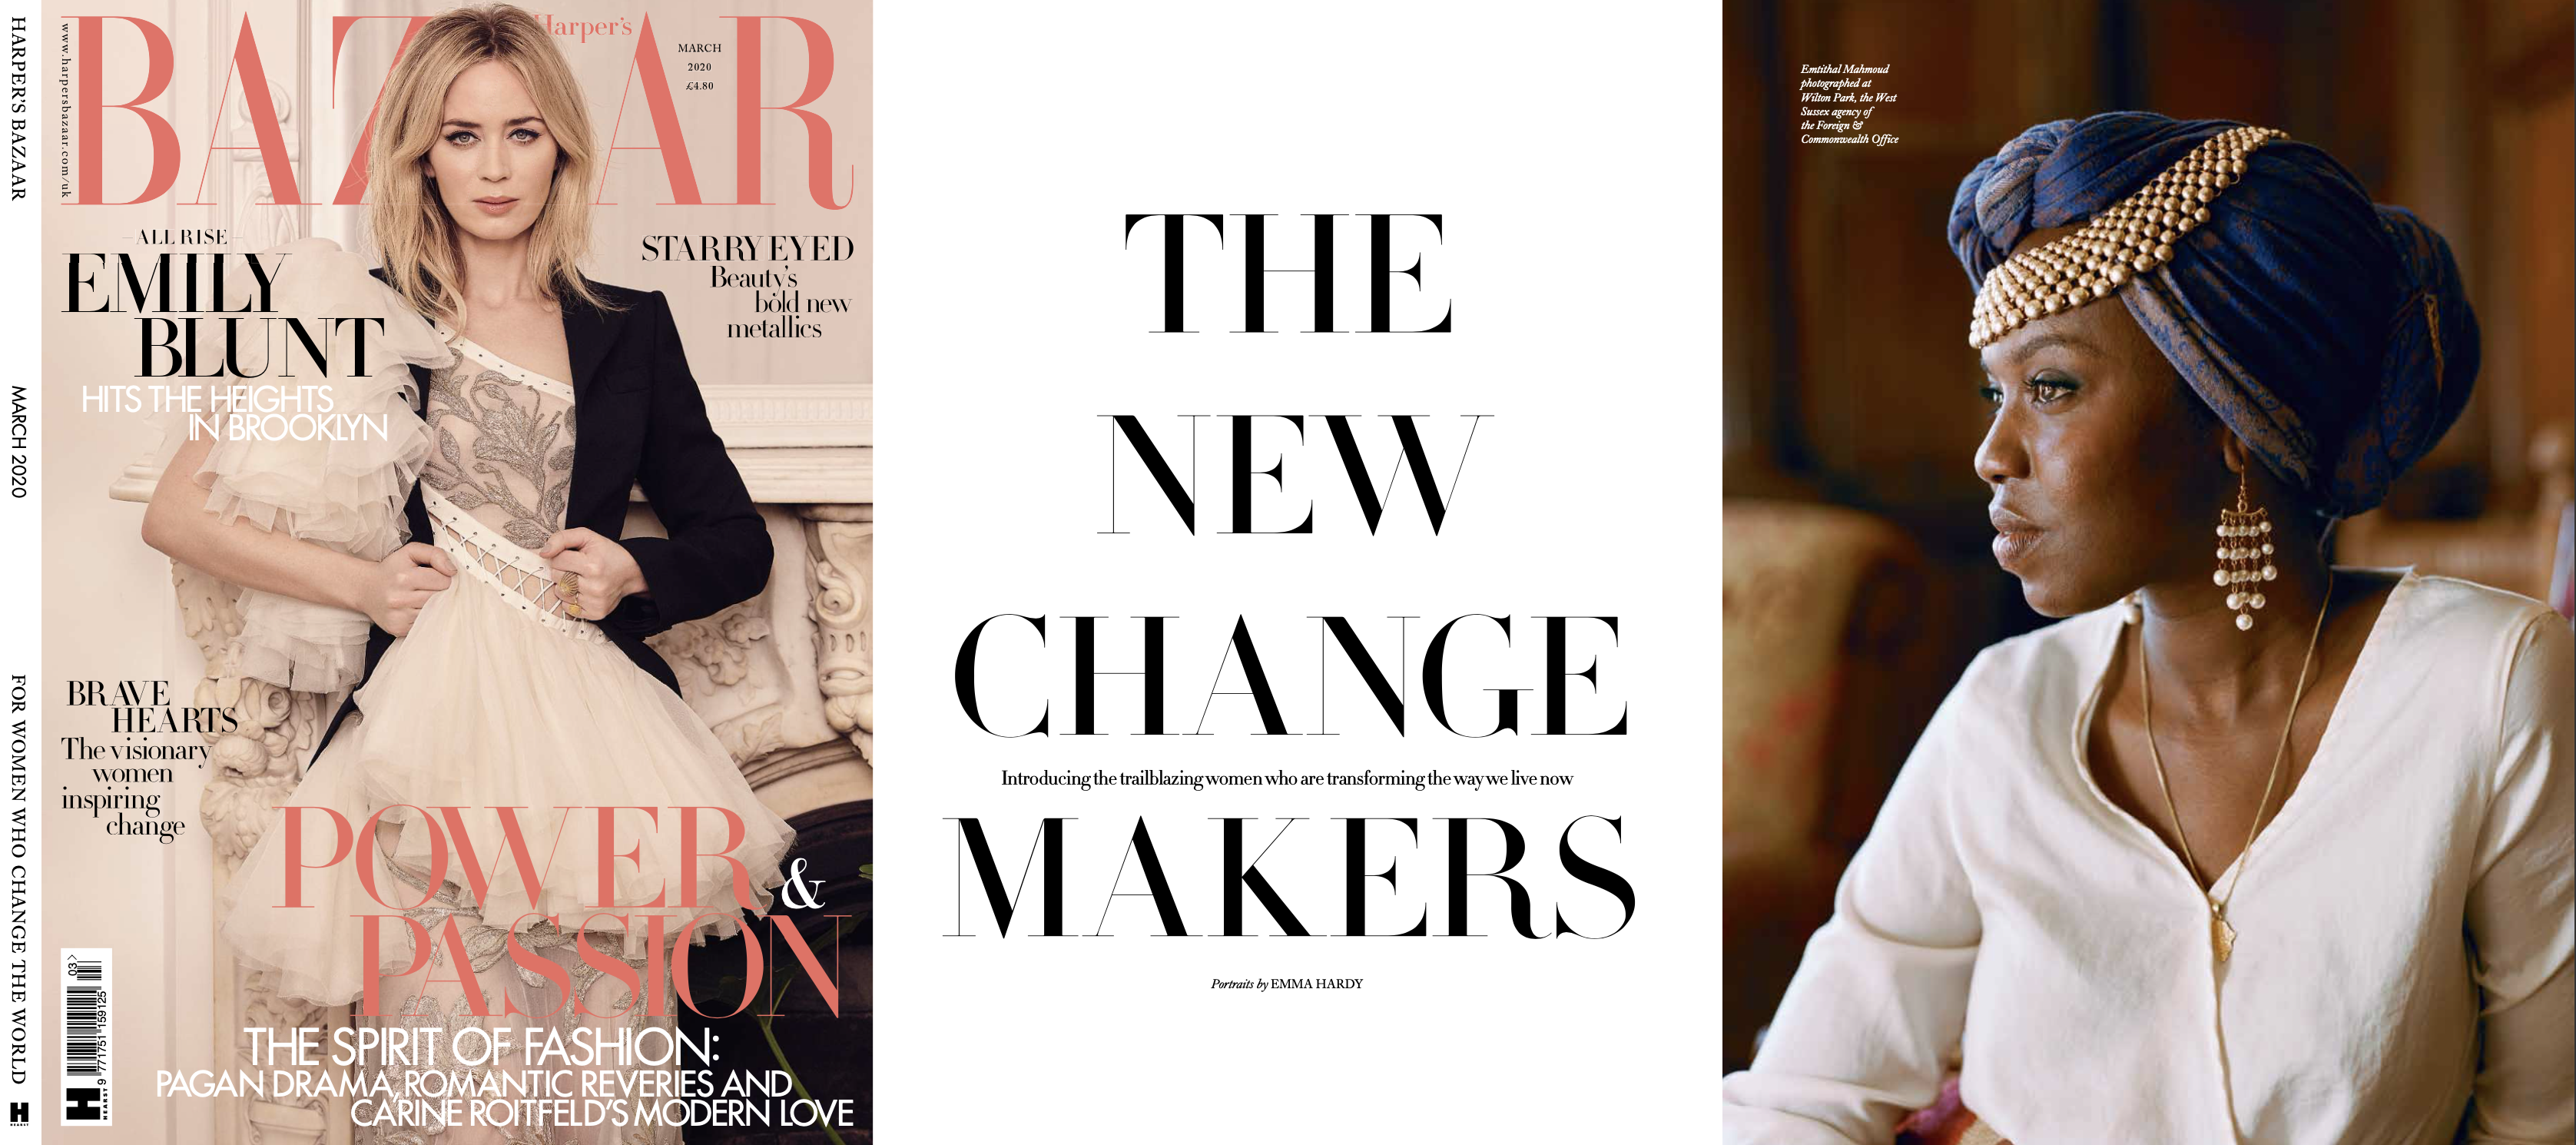 Harper's Bazaar March 2020